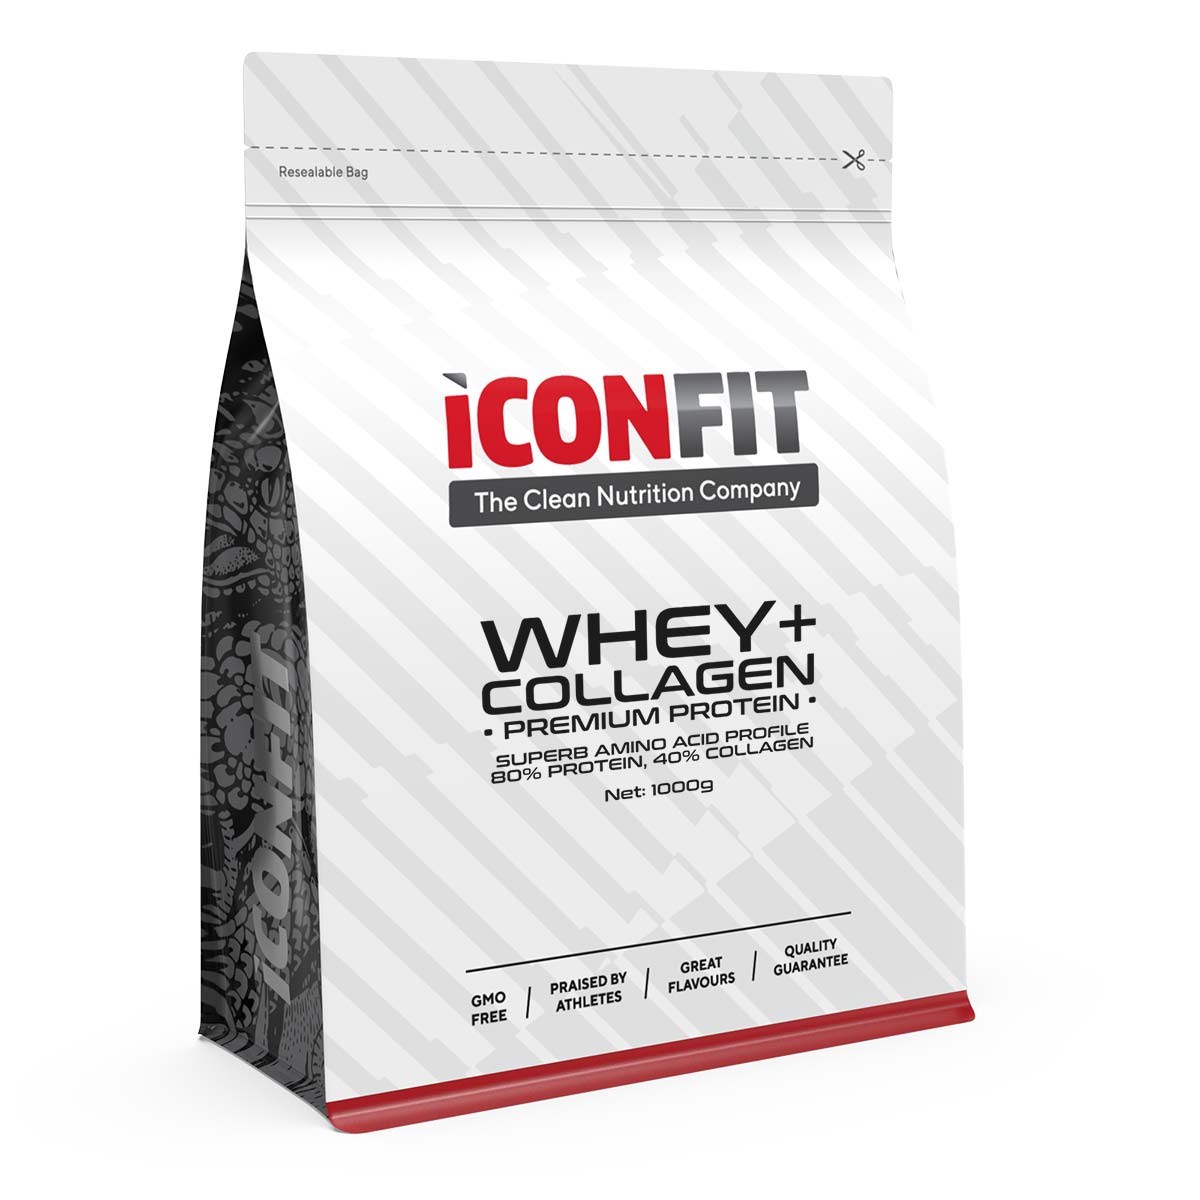 ICONFIT WHEY+ Collagen • Premium Protein 1kg